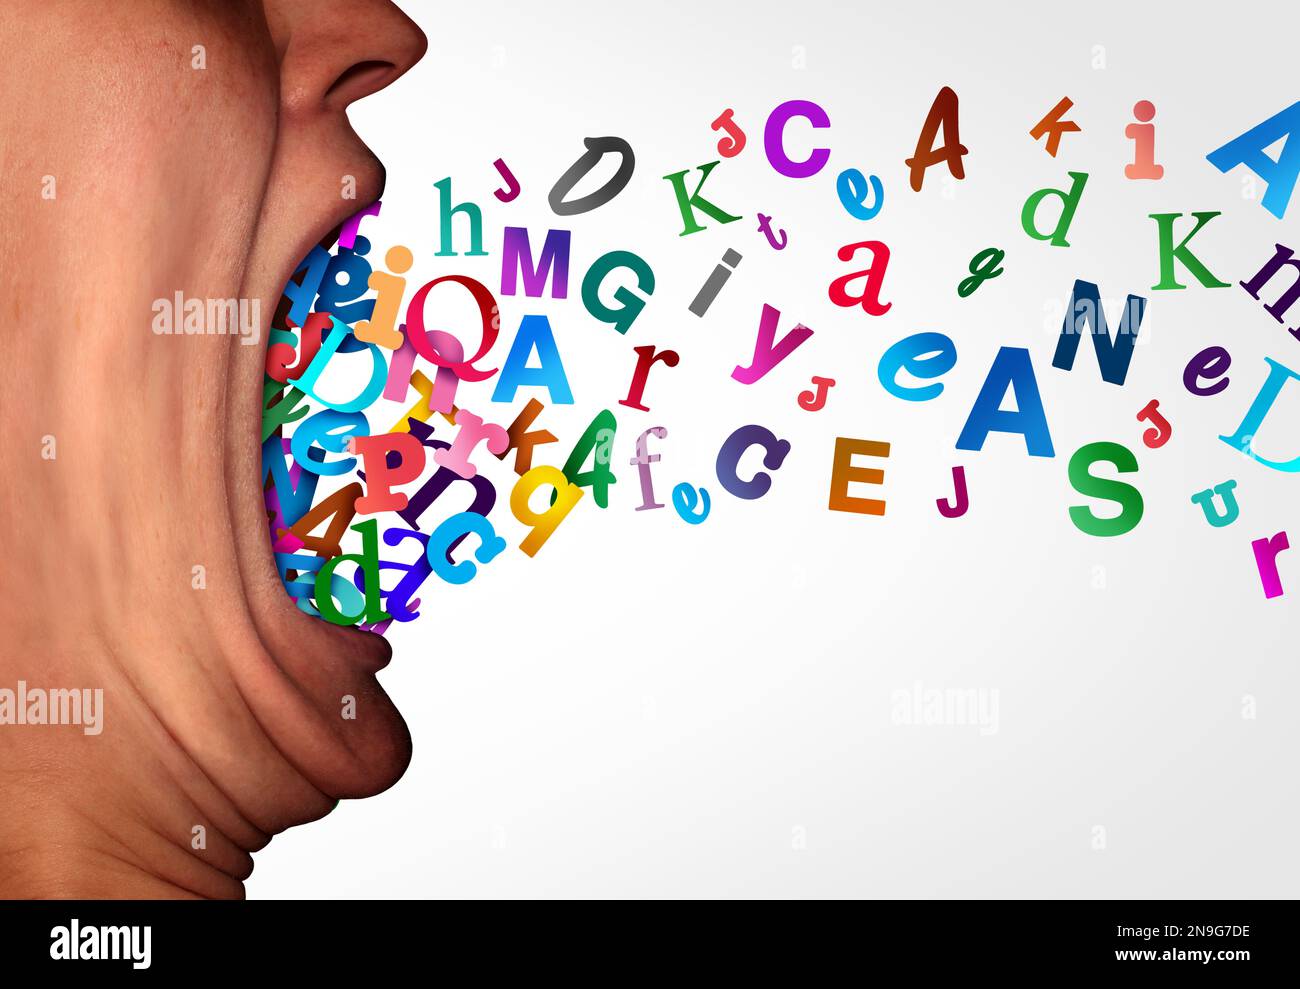 Grammer und Phonik oder Lernen von Sprache und gesprochenem Wort und autistisches Spektrum oder Dyslexie-Syndrom-Konzept als offener menschlicher Mund aus Alphabet Stockfoto